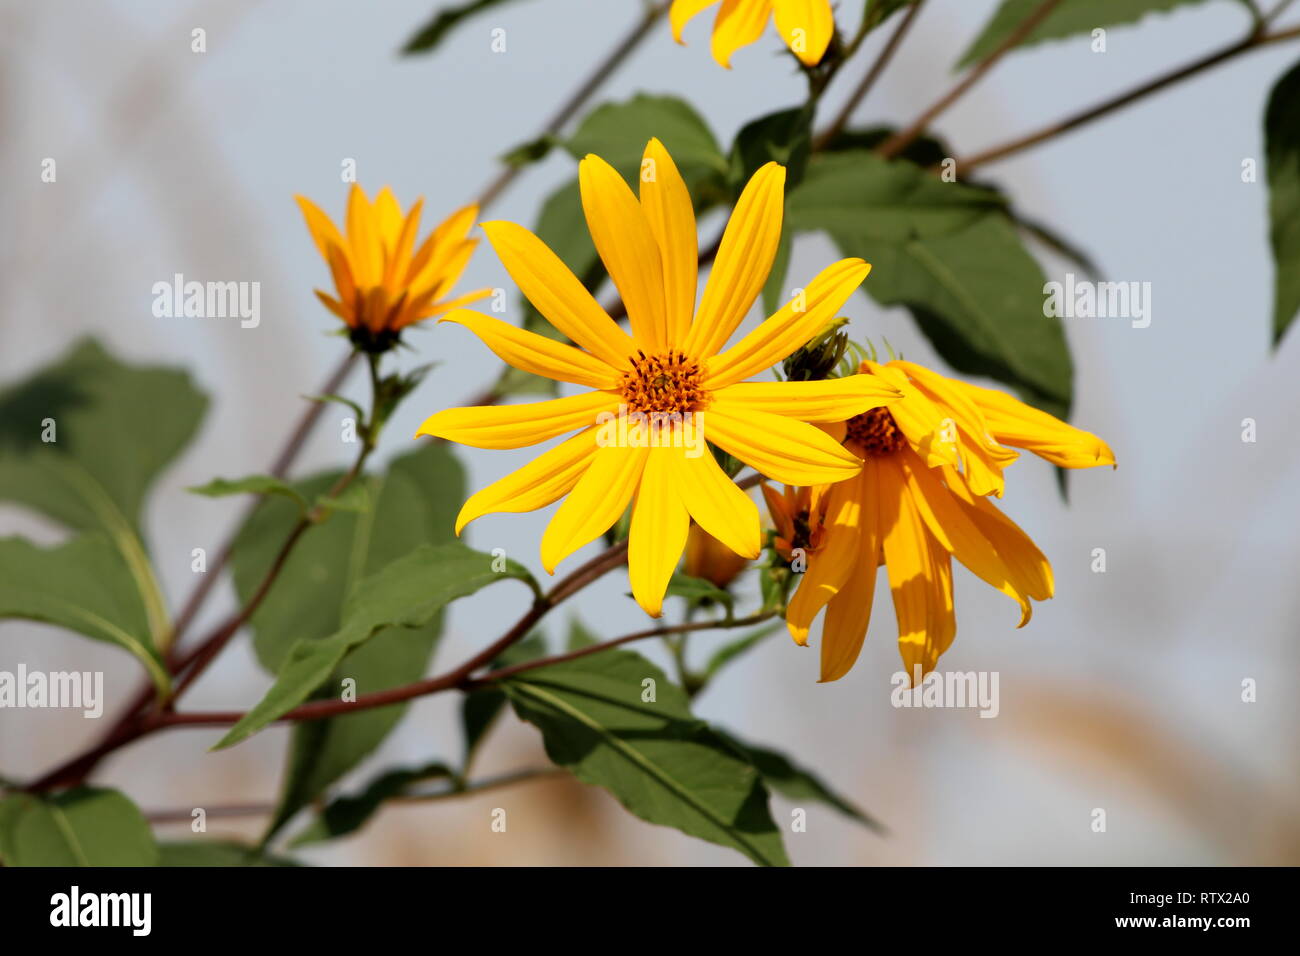 Leuchtend gelbe Blüten der Topinambur oder Helianthus tuberosus oder  Sunroot oder Sunchoke oder Erde apple Stauden mehrjährig Sonnenblumen  Pflanzen Stockfotografie - Alamy